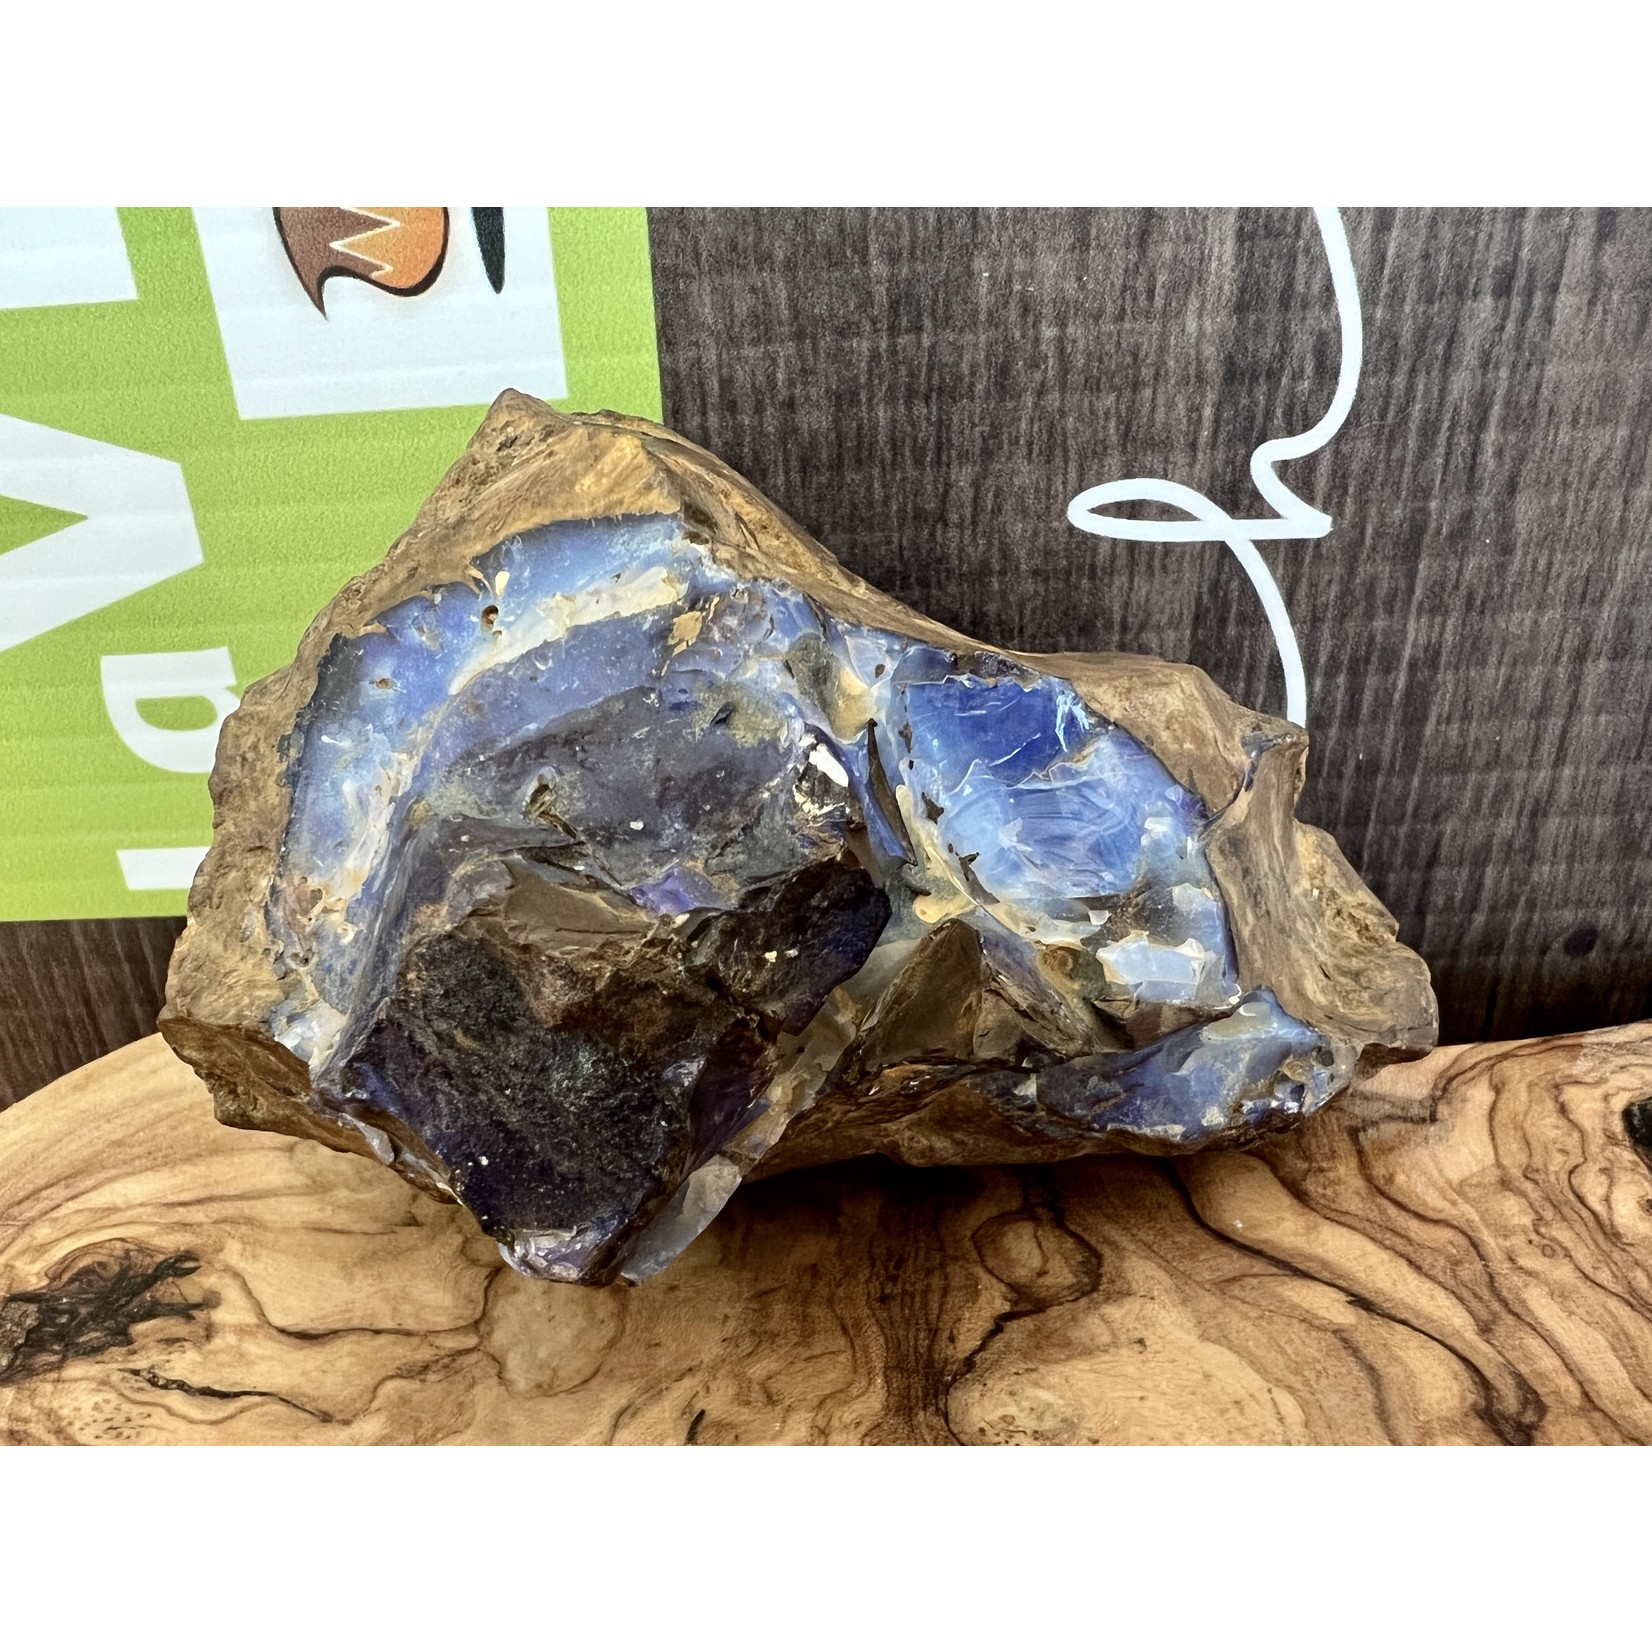 magnifique opale boulder de l'Australie, influence la circulation sanguine et apaise les sautes d'humeur et renforce la confiance en soi